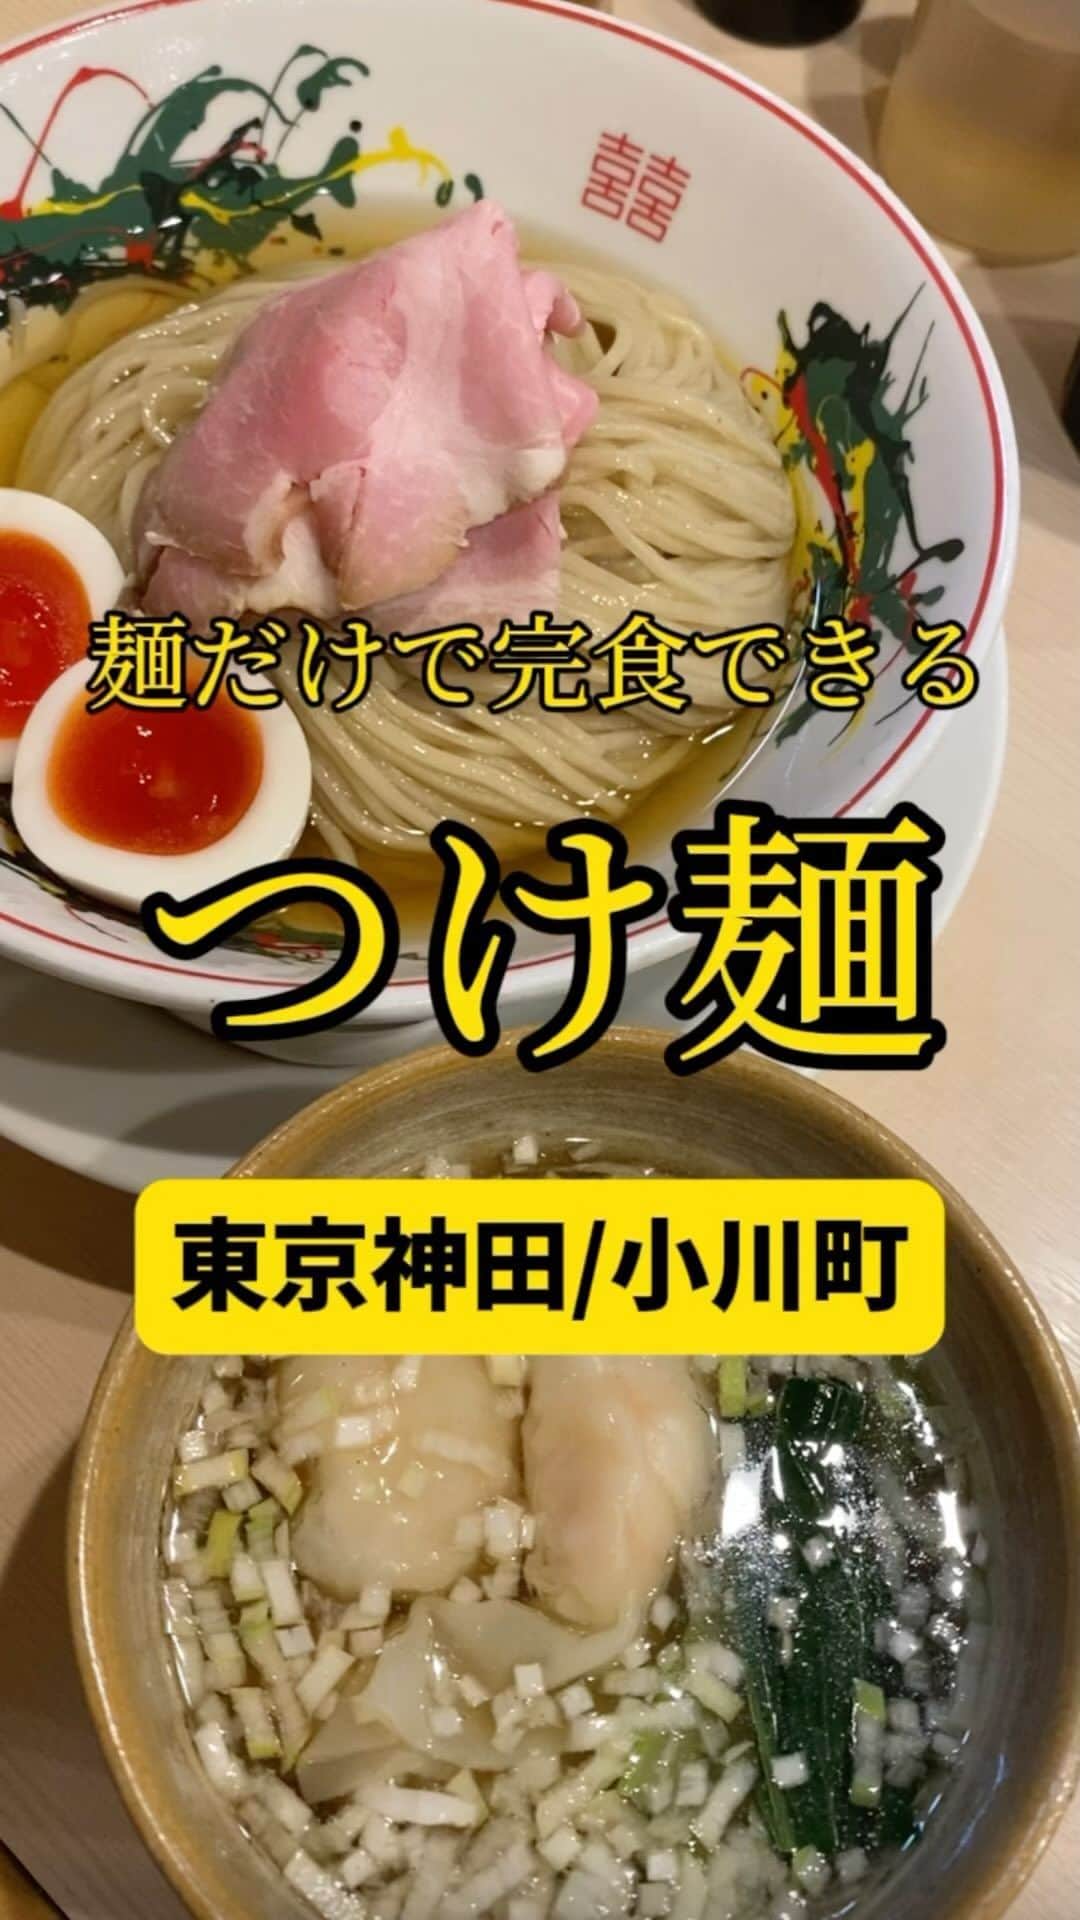 Mr.FISHEYE/魚眼男のインスタグラム：「麺だけで完食できる美味さのつけ麺🍜東京/神田/小川町「つけめん金龍」  (美味しいお店など情報をなるべく早めに紹介するので @ryo_onoma をお願いします🙇‍♂️)  鰹昆布水つけ麺を食べたことない人はまずどこのでも良いから食べて欲しい。こんな食べ物があったのかと驚くだろう。その上で、だ。このお店のつけ麺を食べて欲しい。1番最初にこの金龍のつけ麺を食べるのはなし。すごさが分からなくなるからだ。味、粘度、これが完成形と思わせるクオリティを舌、いや口全体、脳みそが感じる。作れそうで作れない領域にあると思う。去年か、一昨年か、このお店に行った時は一切行列はできておらず、その状態ですぐに投稿したら確かTikTokでバズった、バズってしまった。その後行列ができるようになったらしい。そしてこの撮影日、しっかり行列ができていた。50分待った。50分寒い外で待っても納得の鰹昆布水つけ麺だった。  【つけめん金龍】 📍東京都千代田区神田司町2-15-16 サトウビル 1F 📲不明 🈺昼の部 11：00〜15：00 夜の部 17：00〜20：30ラストオーダー 定休日:SNS要確認 🚶‍♂️丸の内線　淡路町駅徒歩3分 都営新宿線　小川町駅徒歩3分 小川町駅から120m 🗒️頼んだメニュー：特製の鰹昆布水つけ麺  #神田グルメ #神田ランチ #小川町グルメ #淡路町グルメ #つけ麺 #つけ麺インスタグラマー #つけ麺好きな人と繋がりたい #つけ麺部 #つけ麺大好き #つけ麺好き #鰹昆布水つけ麺 #ラーメン #ラーメン屋 #ラーメン部 #ラーメン倶楽部 #ラーメンパトロール #ラーメン大好き #ラーメン好きな人と繋がりたい #ラーメン好き #らーめん部 #らーめん好きな人と繋がりたい #ワンタン #東京ラーメン」